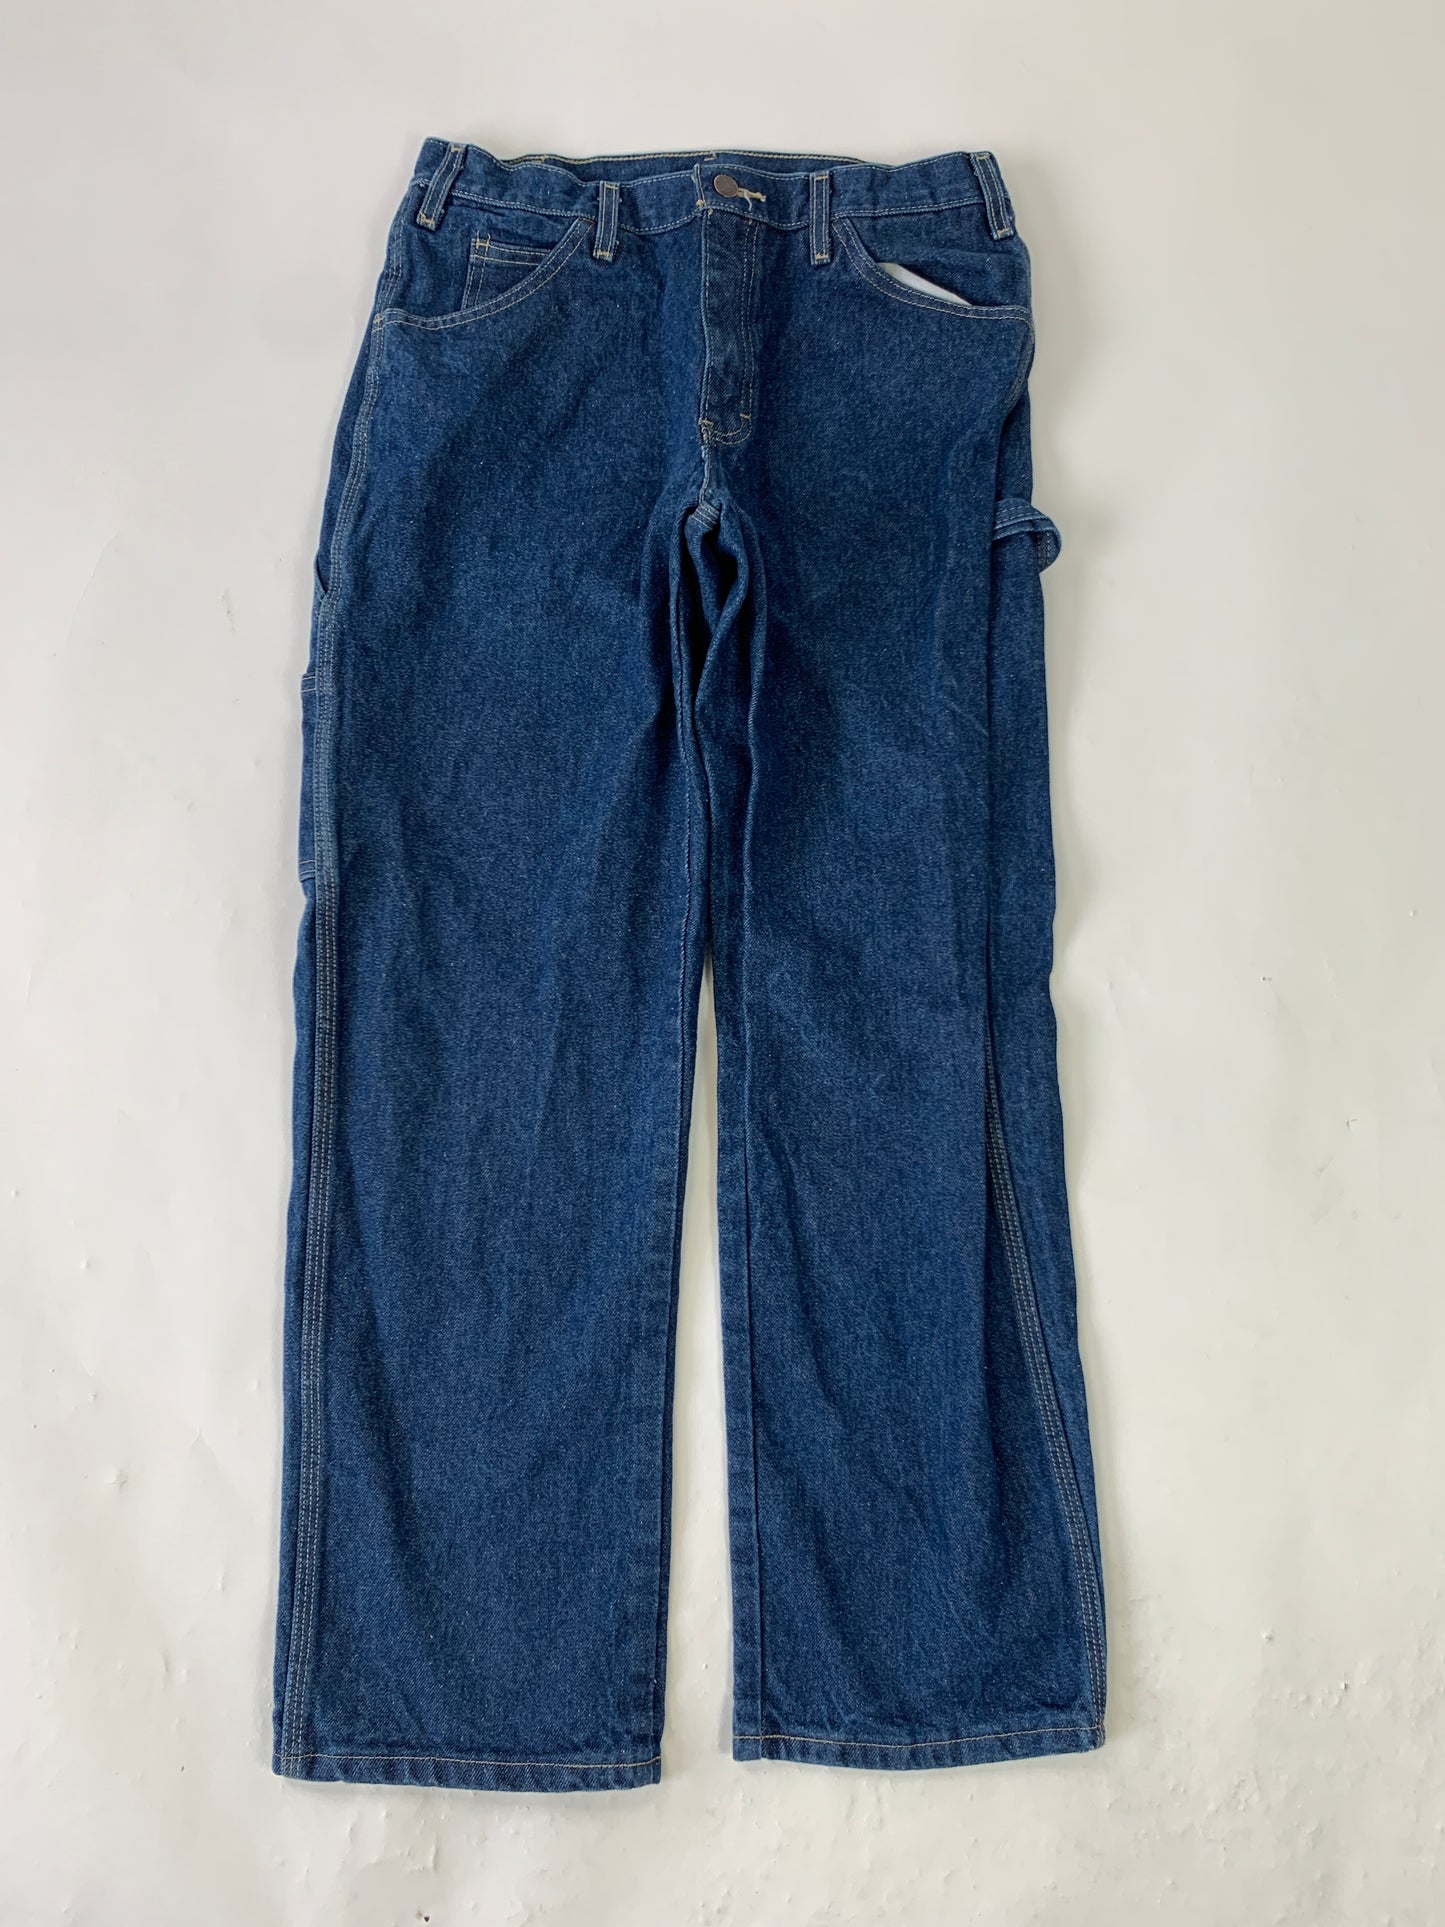 Dickies Carpenter Vintage Jeans - 33